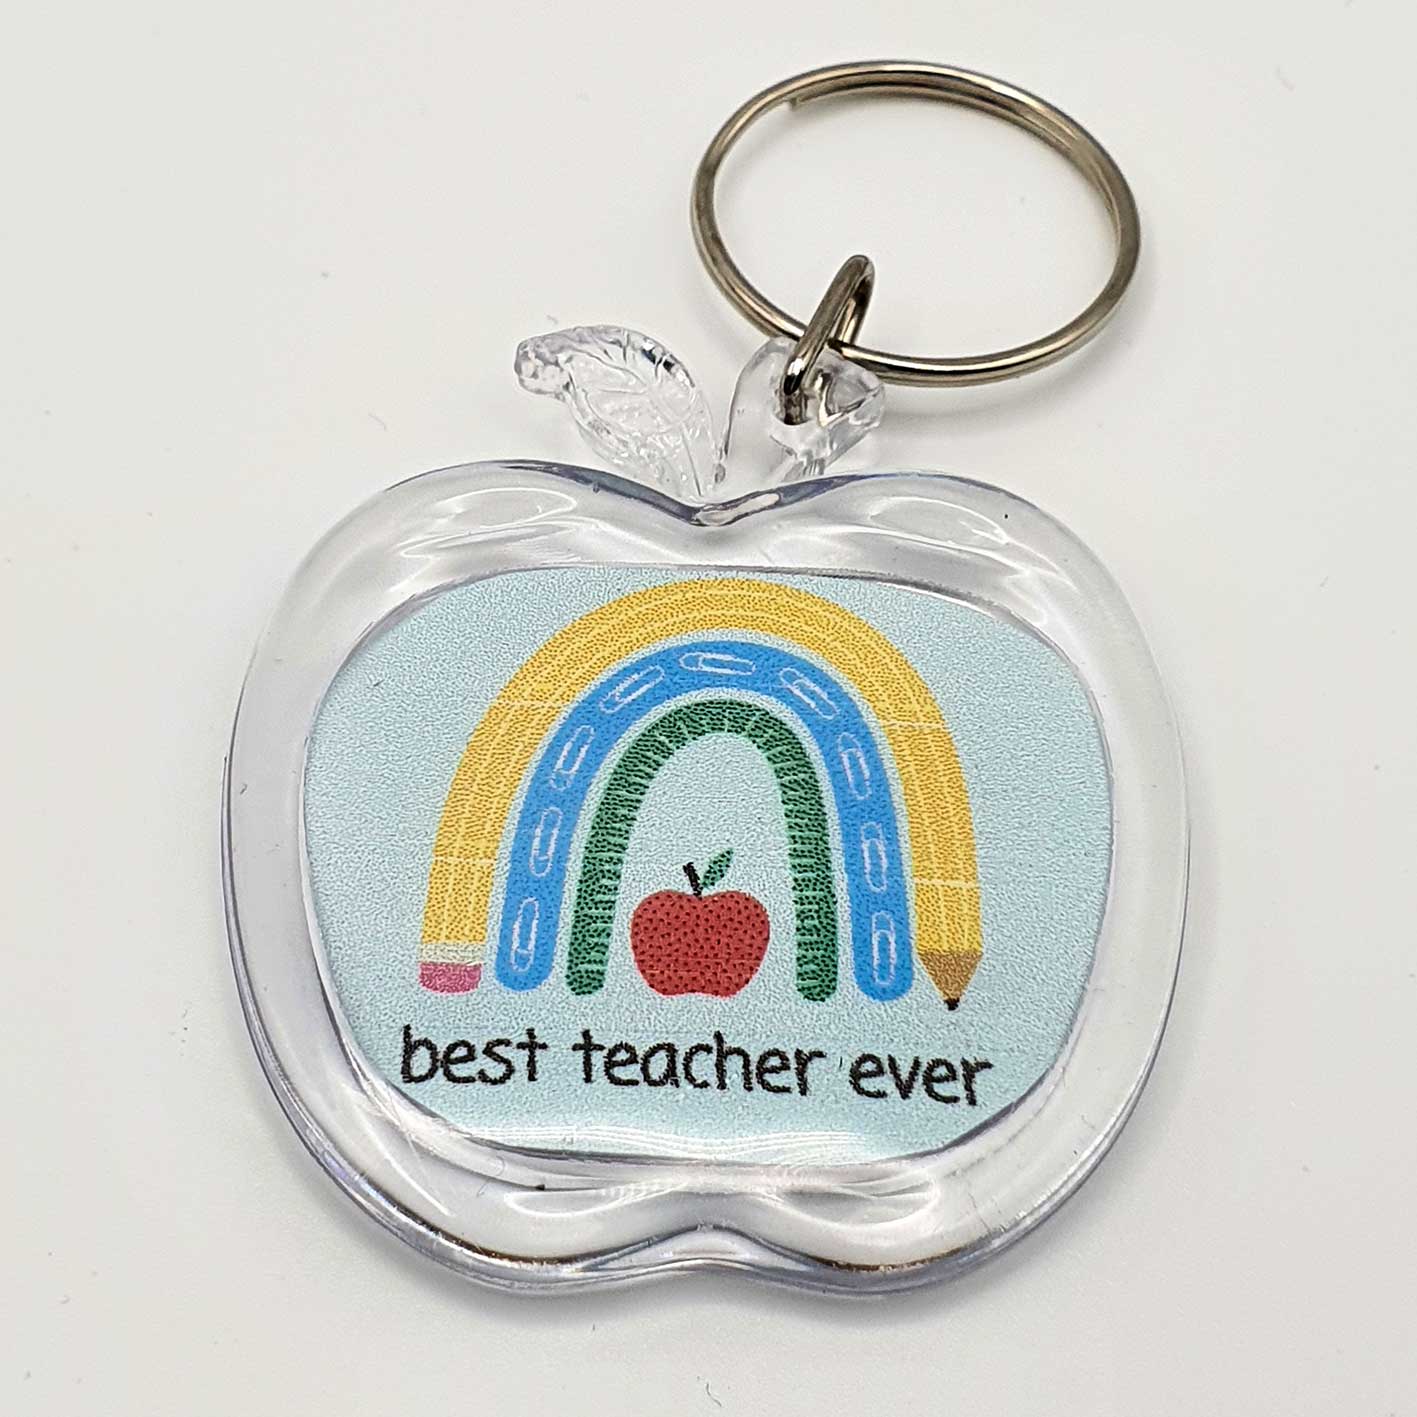 Best Teacher Ever Keychain – 2